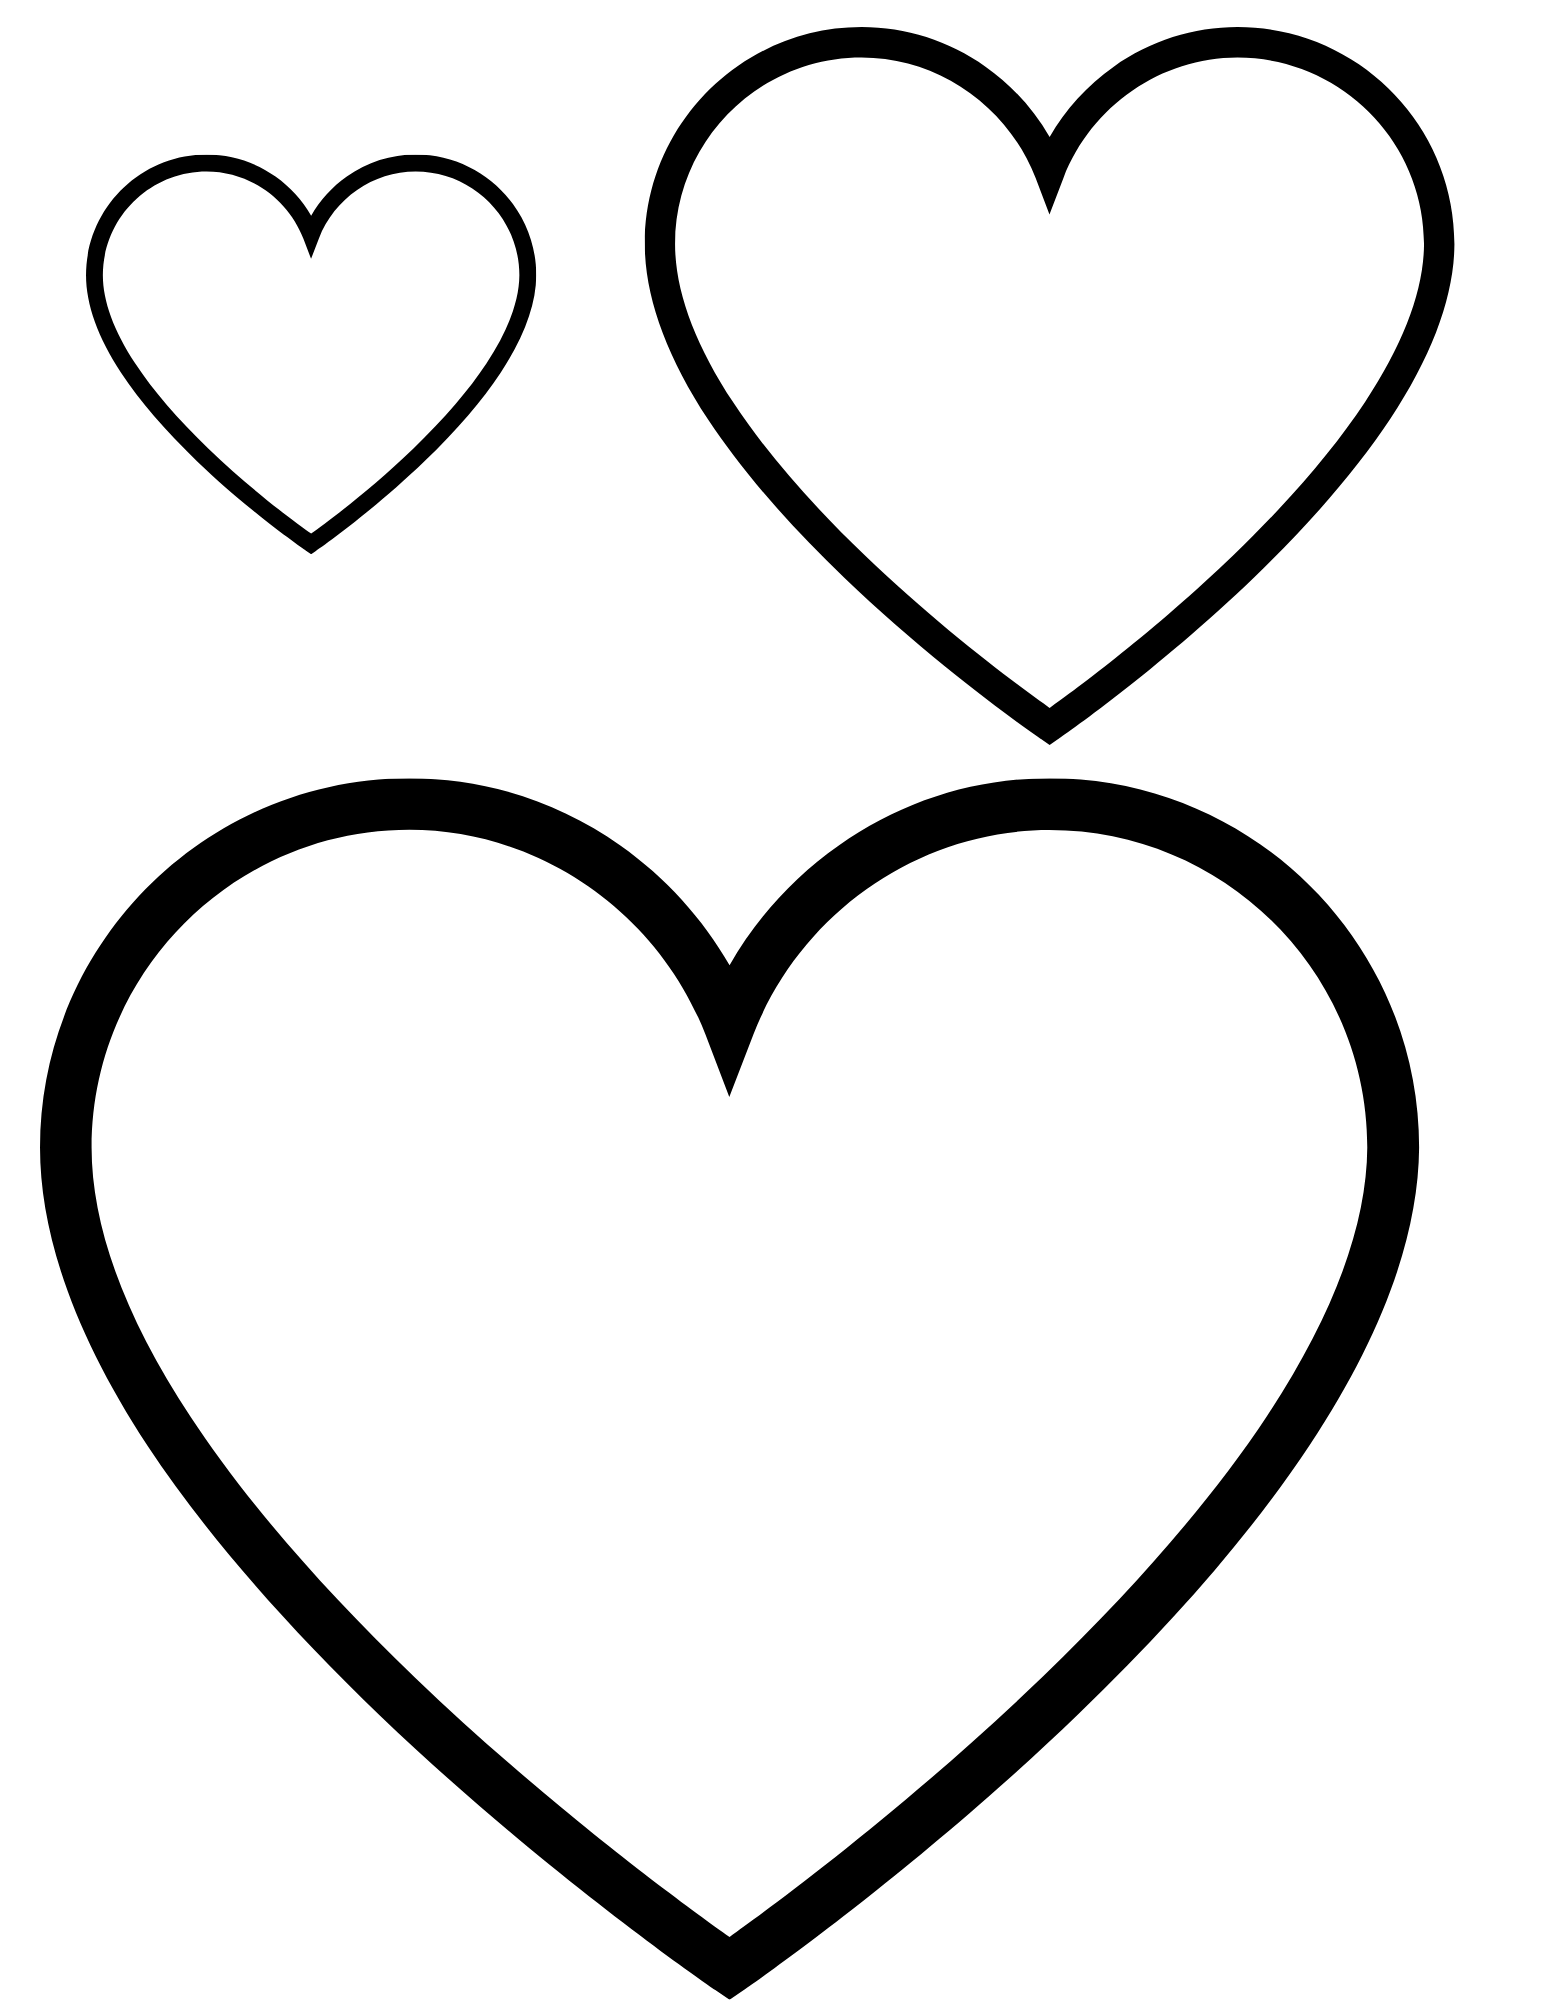 Сердц. Сердце шаблон. Сердечко шаблон. Сердце трафарет. Шаблолон сердце.